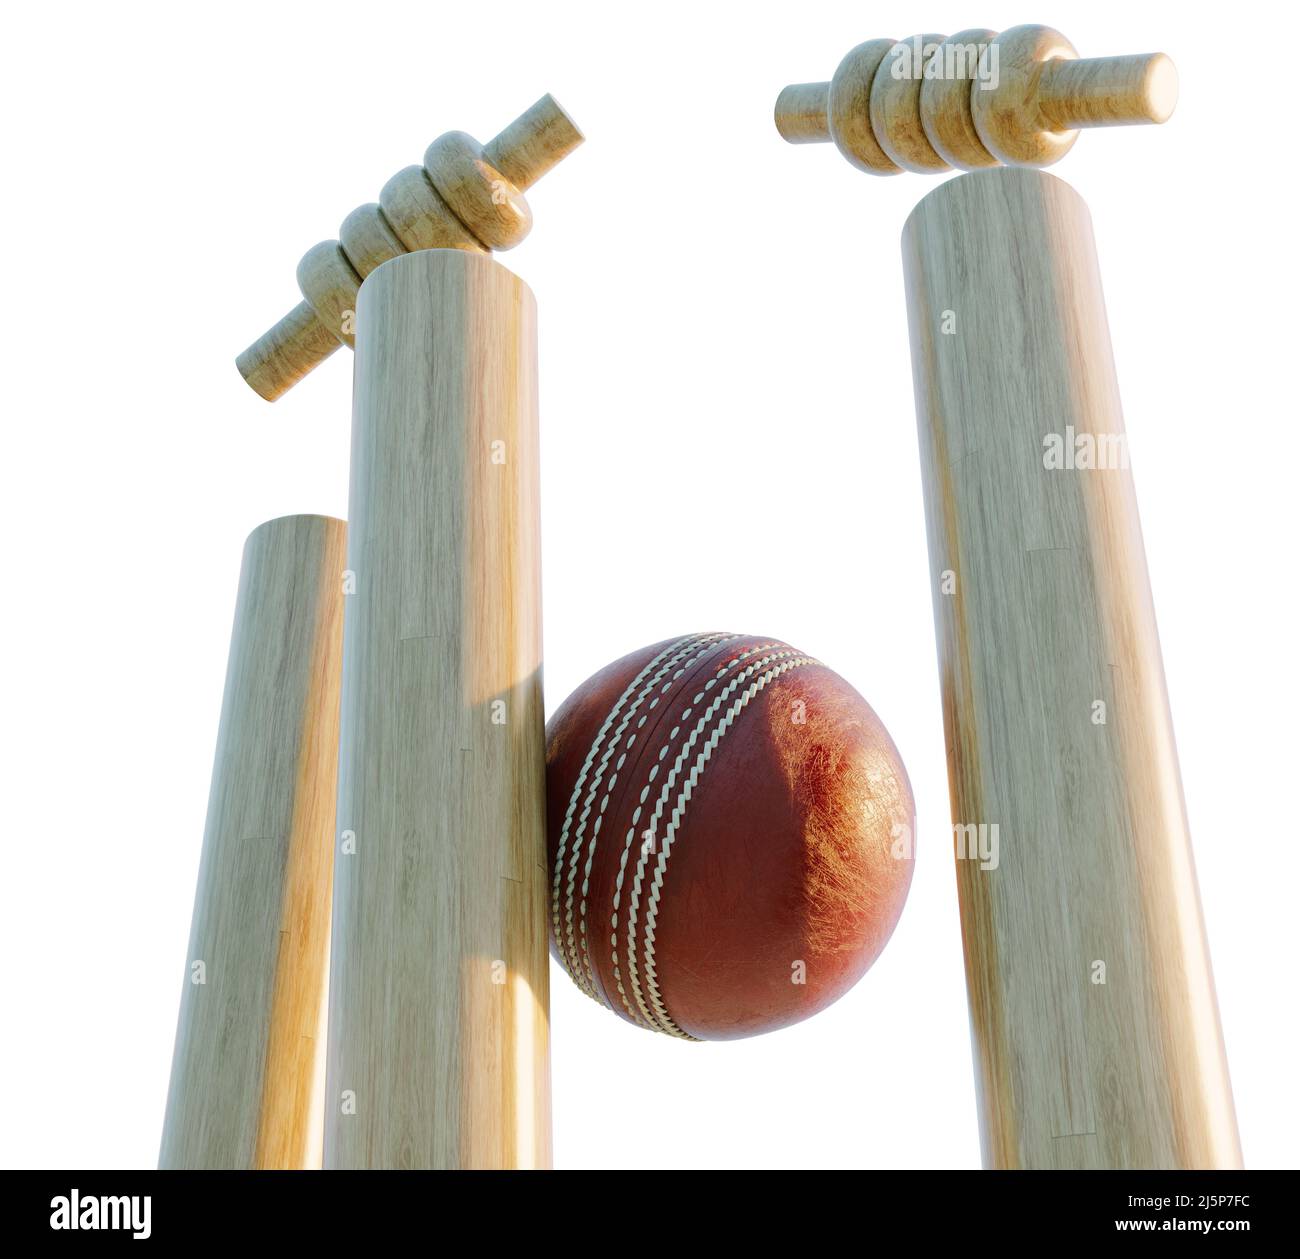 Hölzerne Cricket-Wickets mit auslegenden Bällen auf einem isolierten weißen Hintergrund - 3D Render Stockfoto